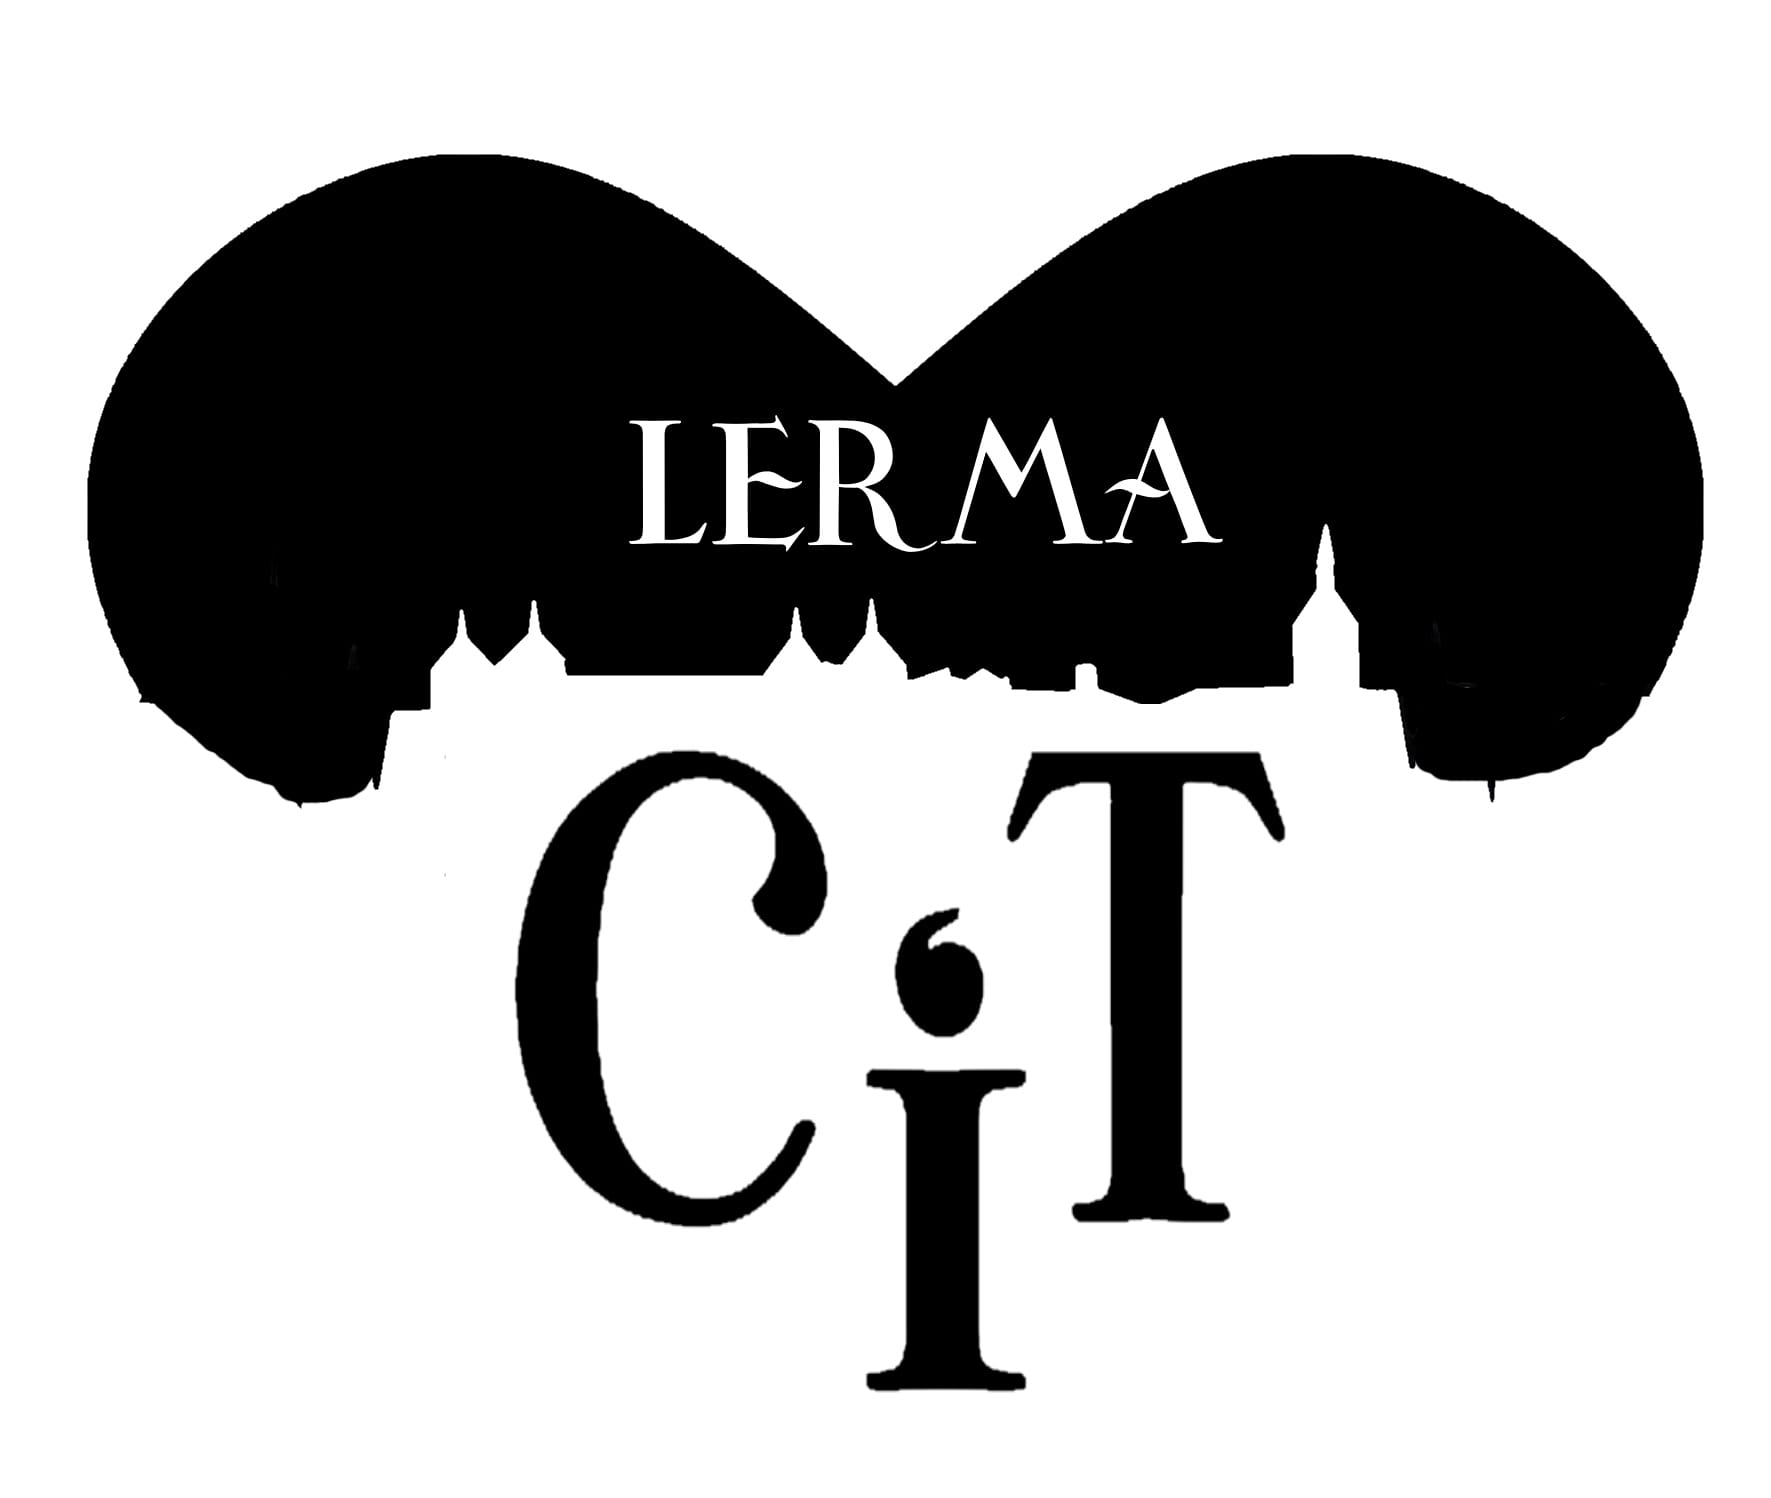 Centro de Iniciativas turísticas de Lerma (CIT)